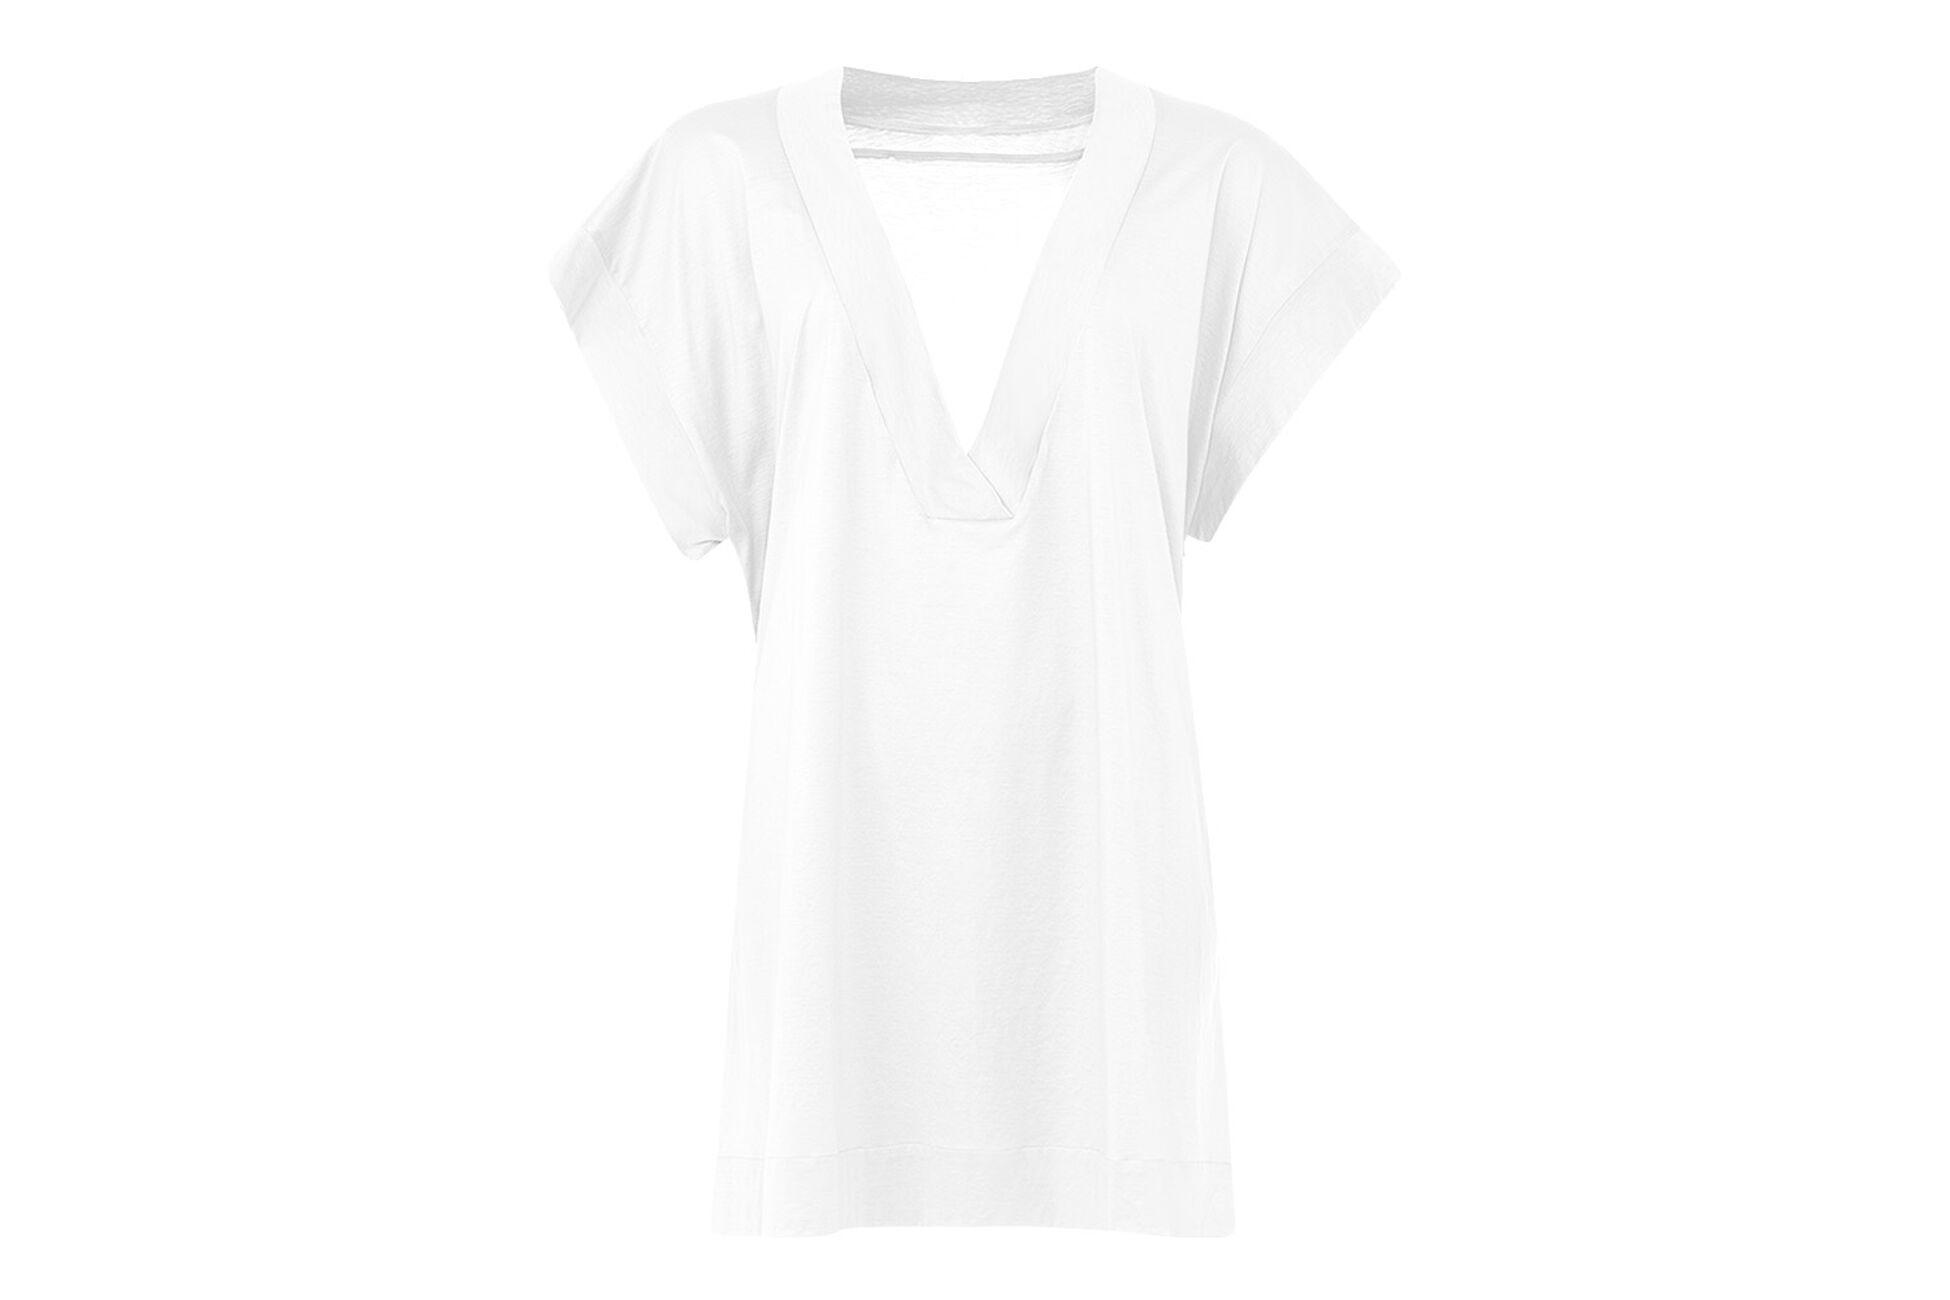 Renée Camiseta Vista estándar NaN